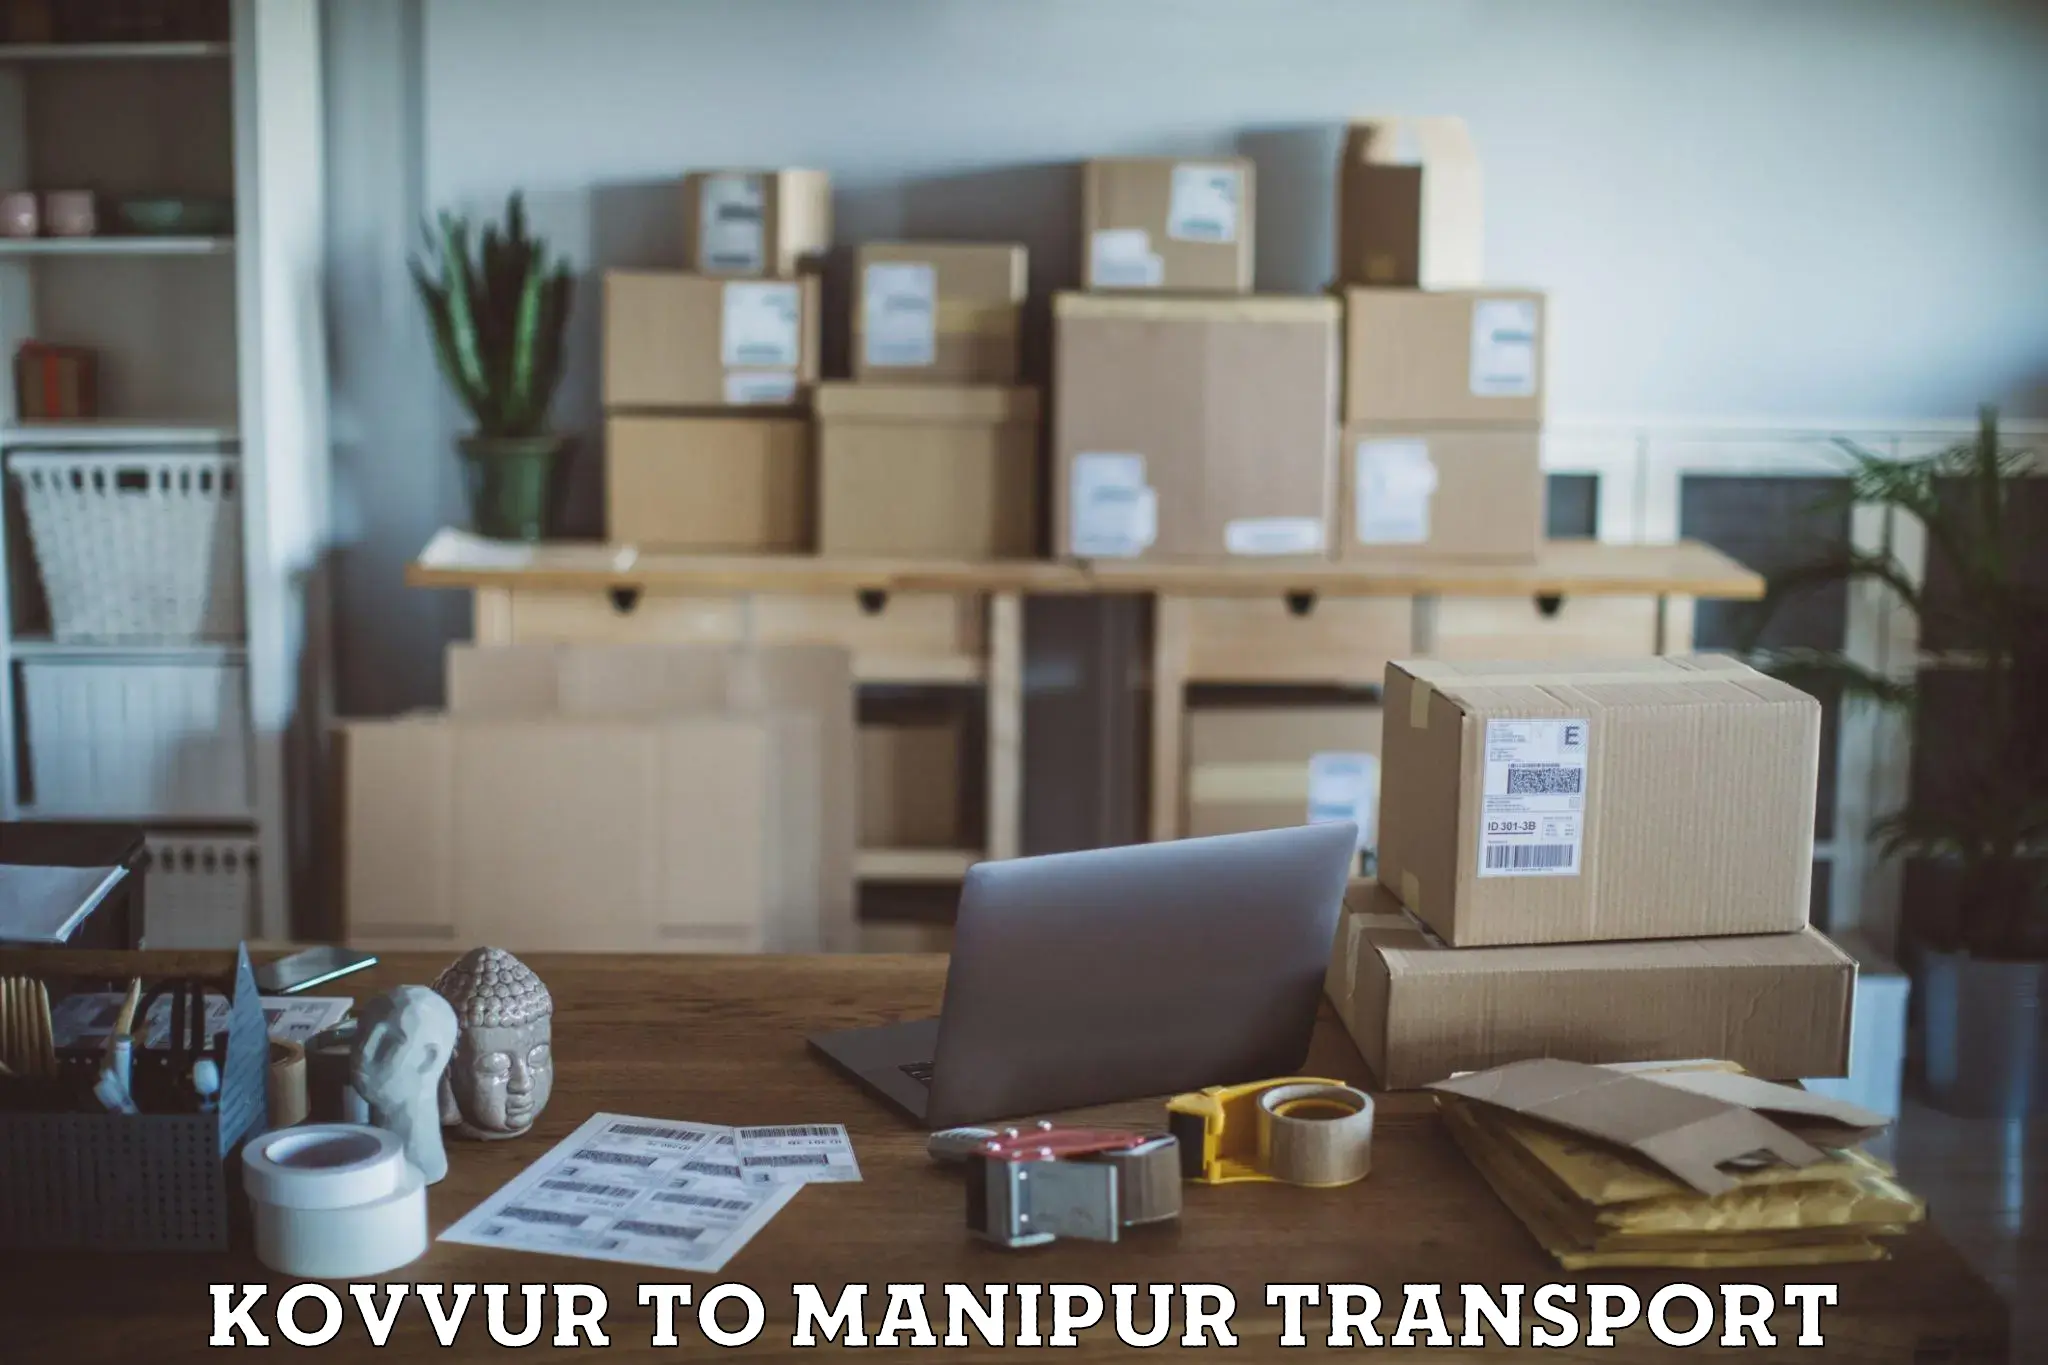 Interstate transport services Kovvur to Churachandpur